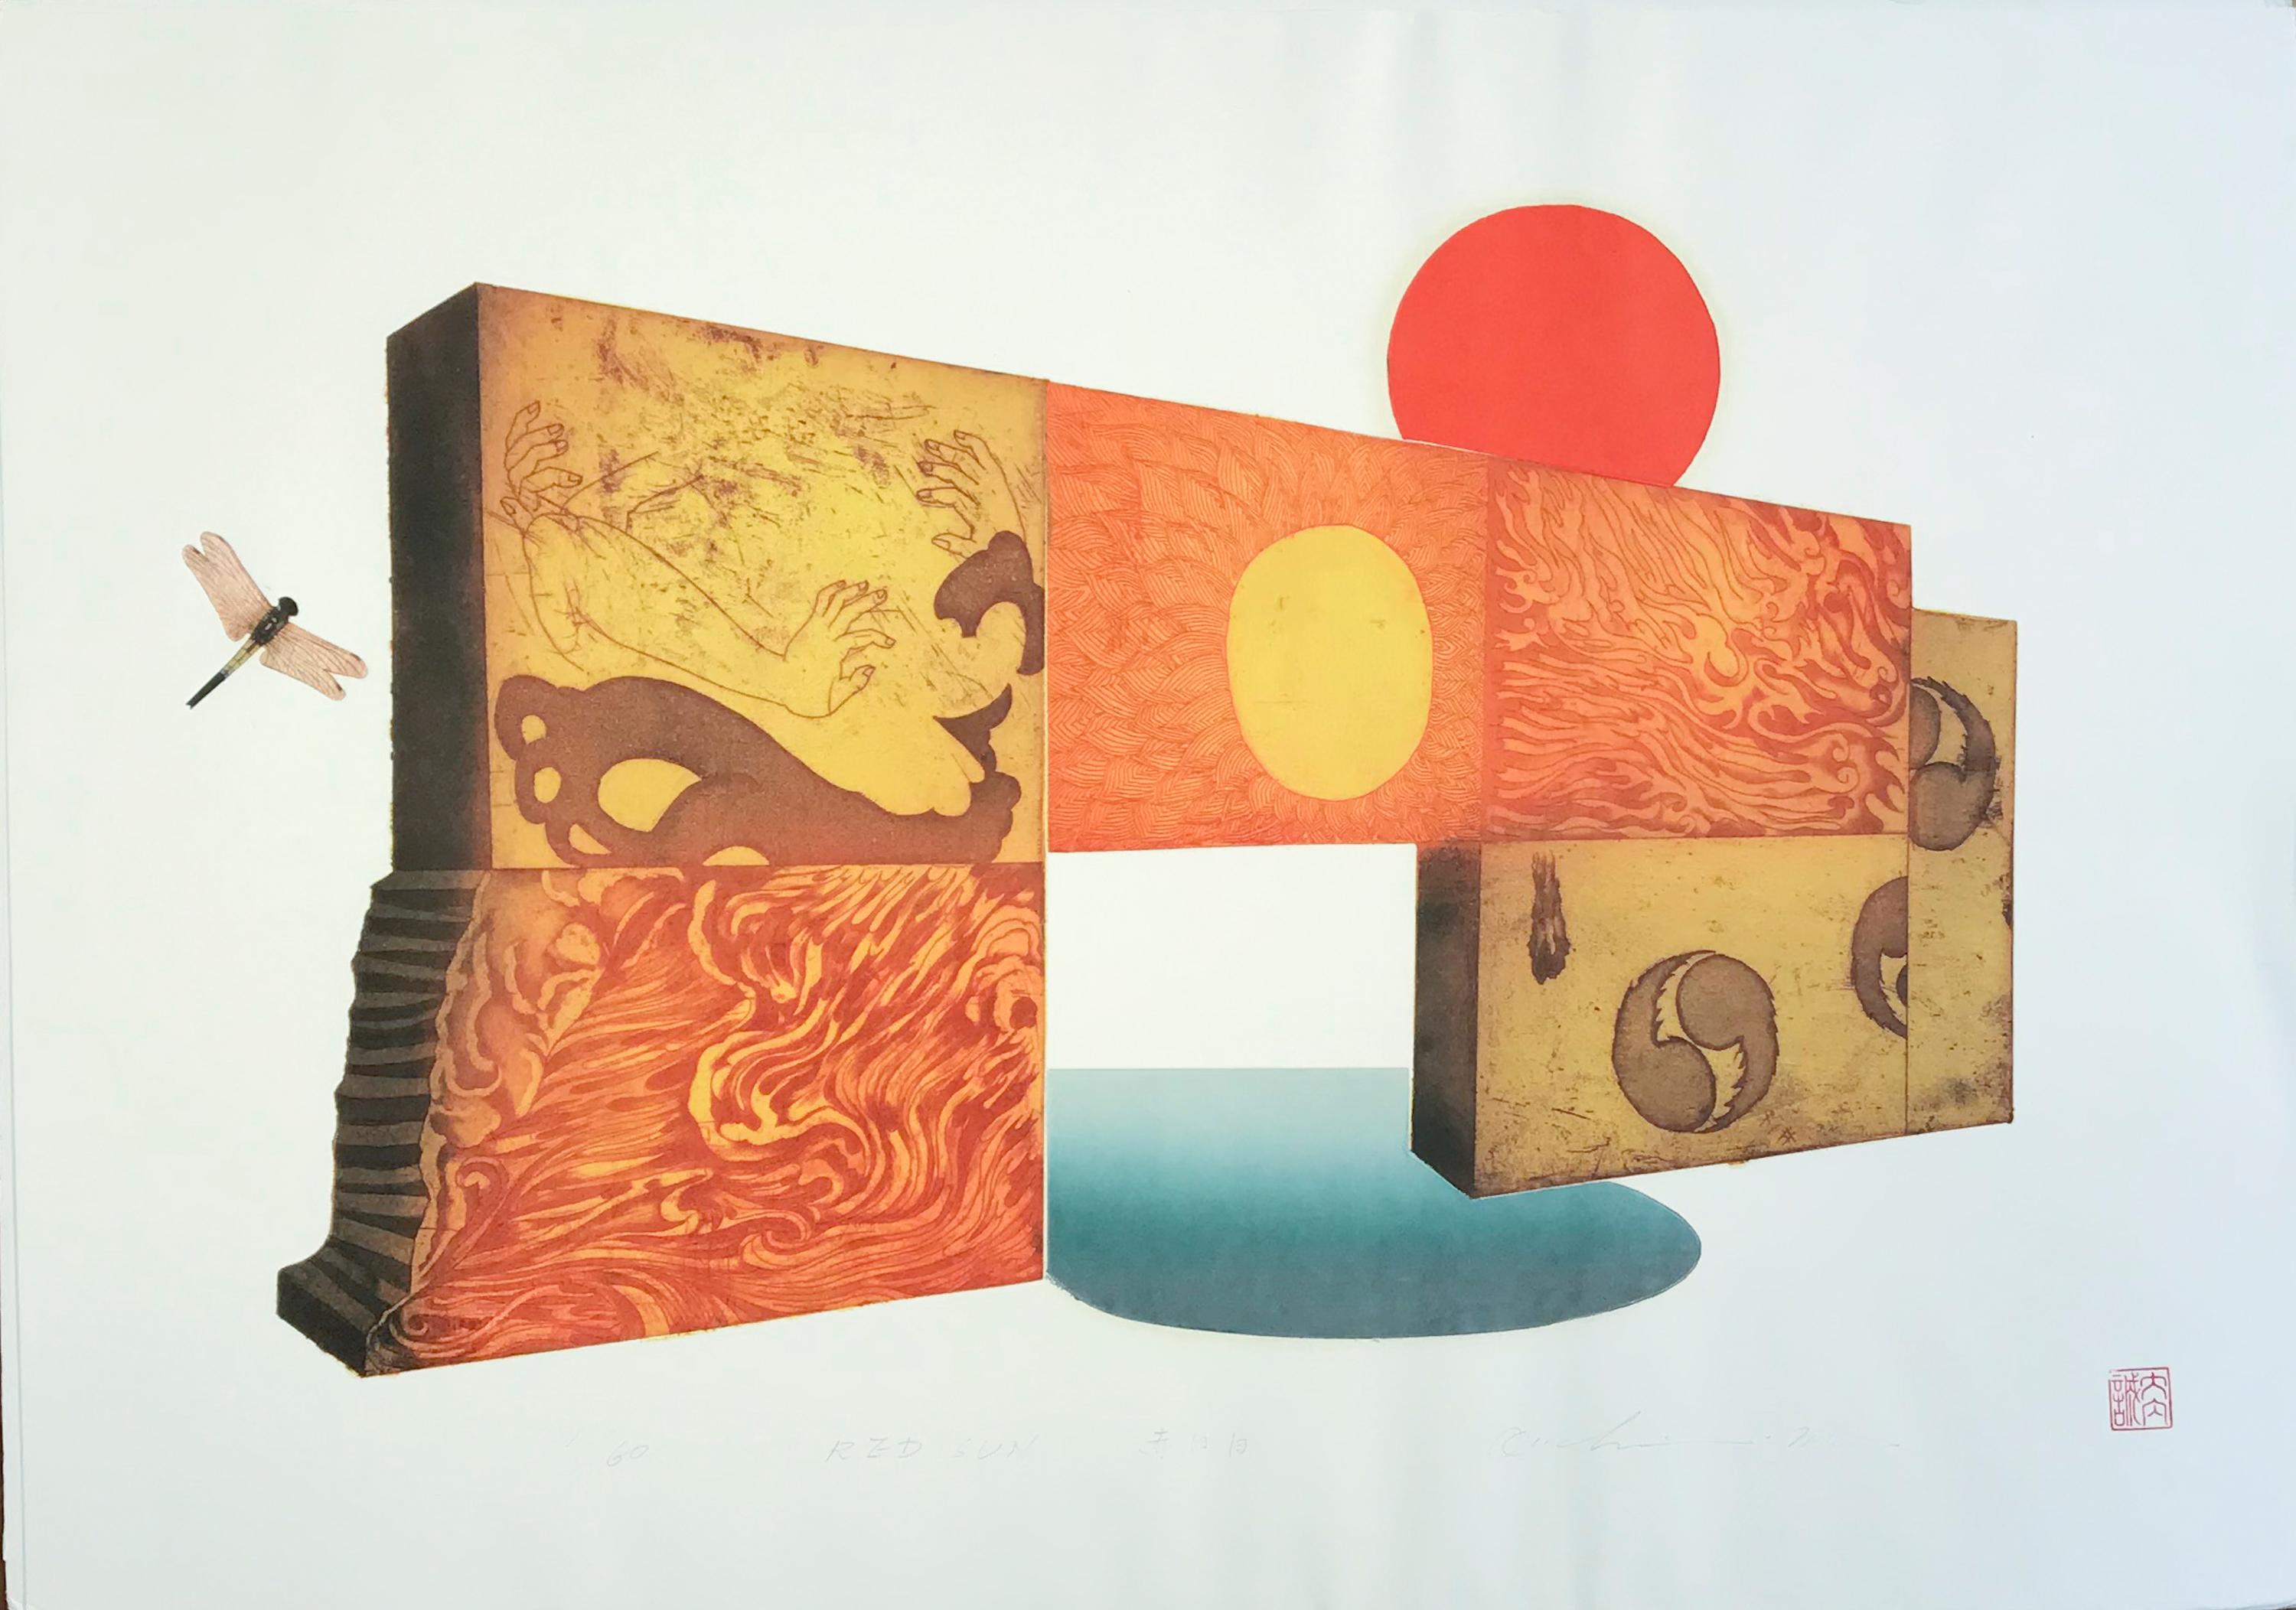 Soleil rouge par Makoto Ouchi, gravure japonaise 1/60, rouge, jaune Kabuki contemporain

quelques ondulations sur le papier. L'imagerie est intacte et vibrante.

Ouchi Makoto (大内マコト) est né à Kawasaki, dans la préfecture de Kanagawa, et est entré à